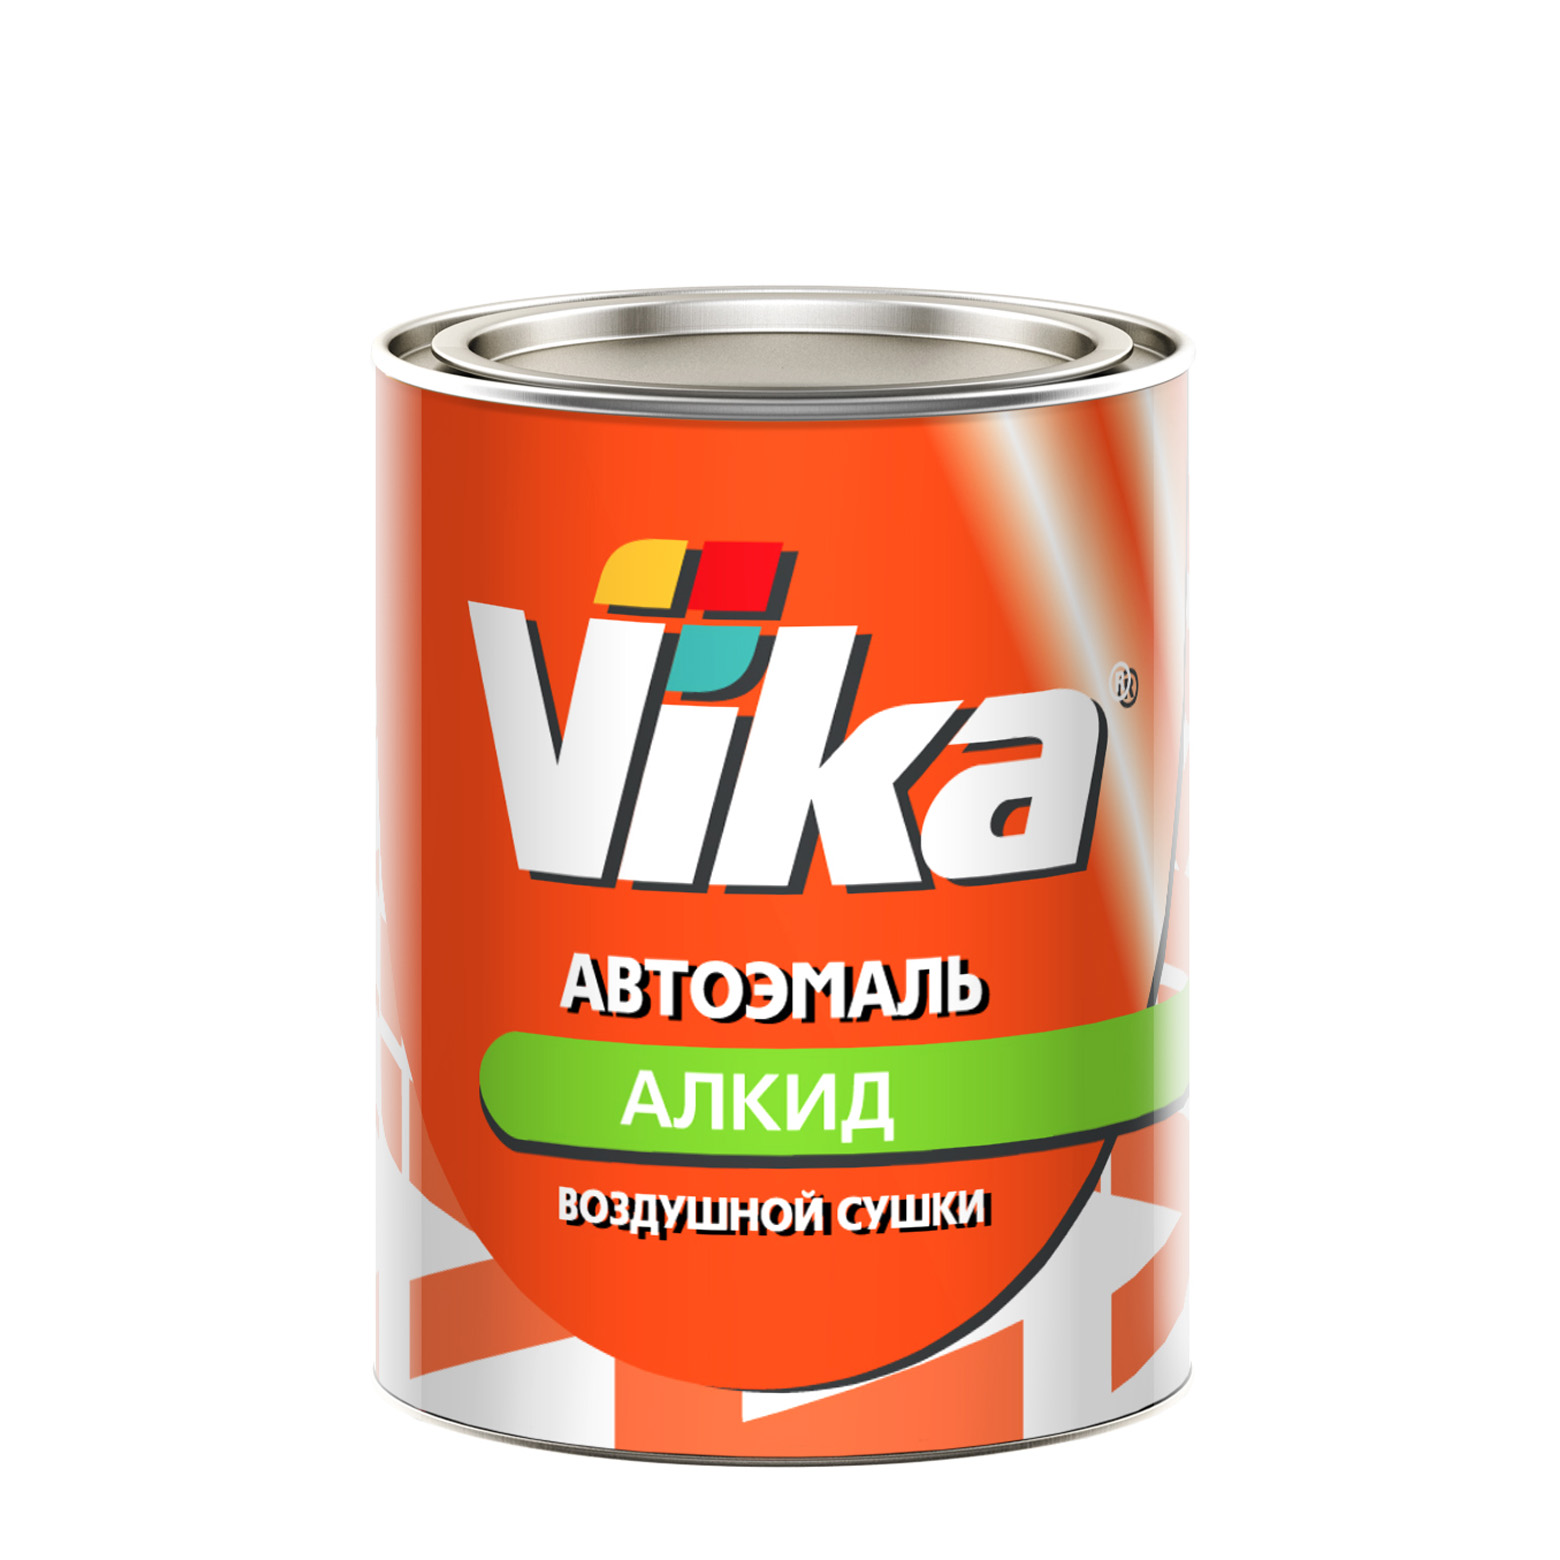 Фото 1 - Автоэмаль Vika-60, цвет 127 Вишневая 02 алкидная глянцевая естественной сушки - 0,8 кг.